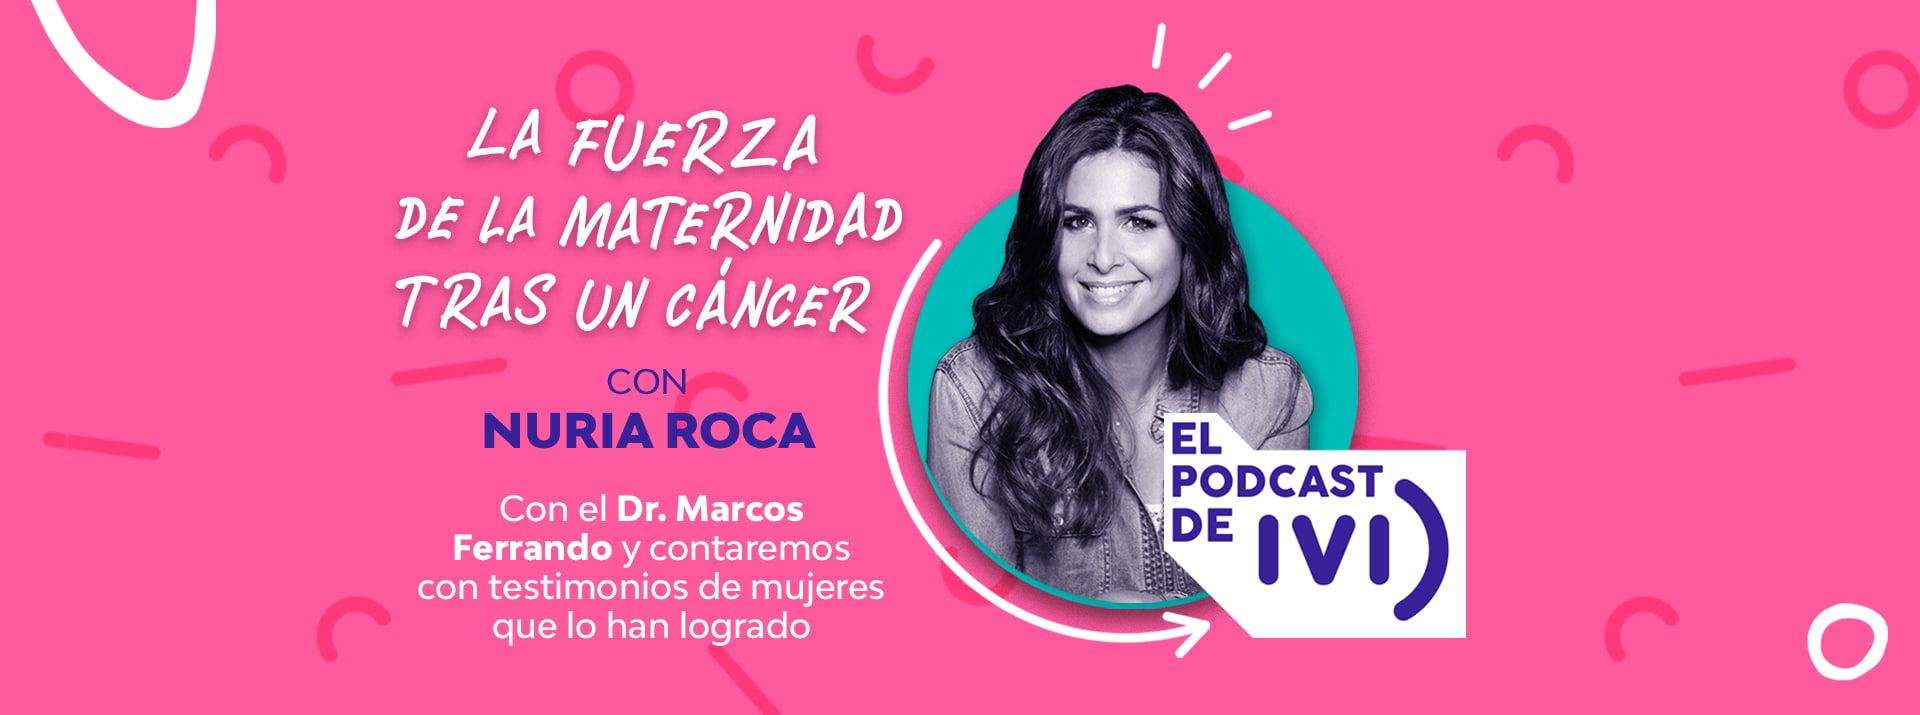 El podcast de IVI con Nuria Roca ep 06: La fuerza de la maternidad tras un cáncer